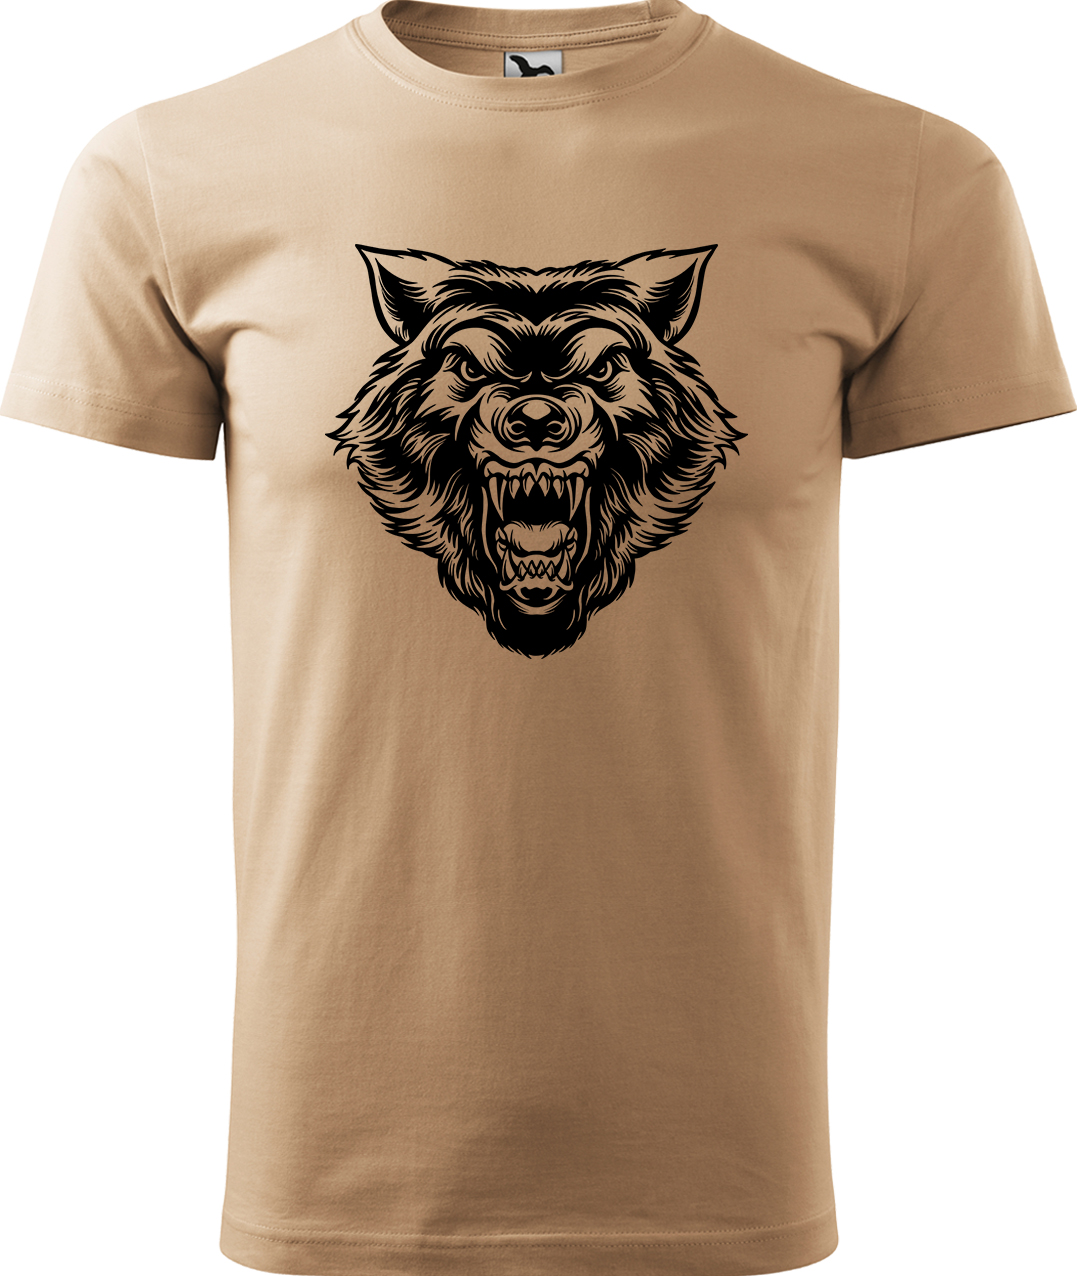 Pánské tričko s vlkem - Rozzuřený vlk Velikost: XL, Barva: Písková (08), Střih: pánský